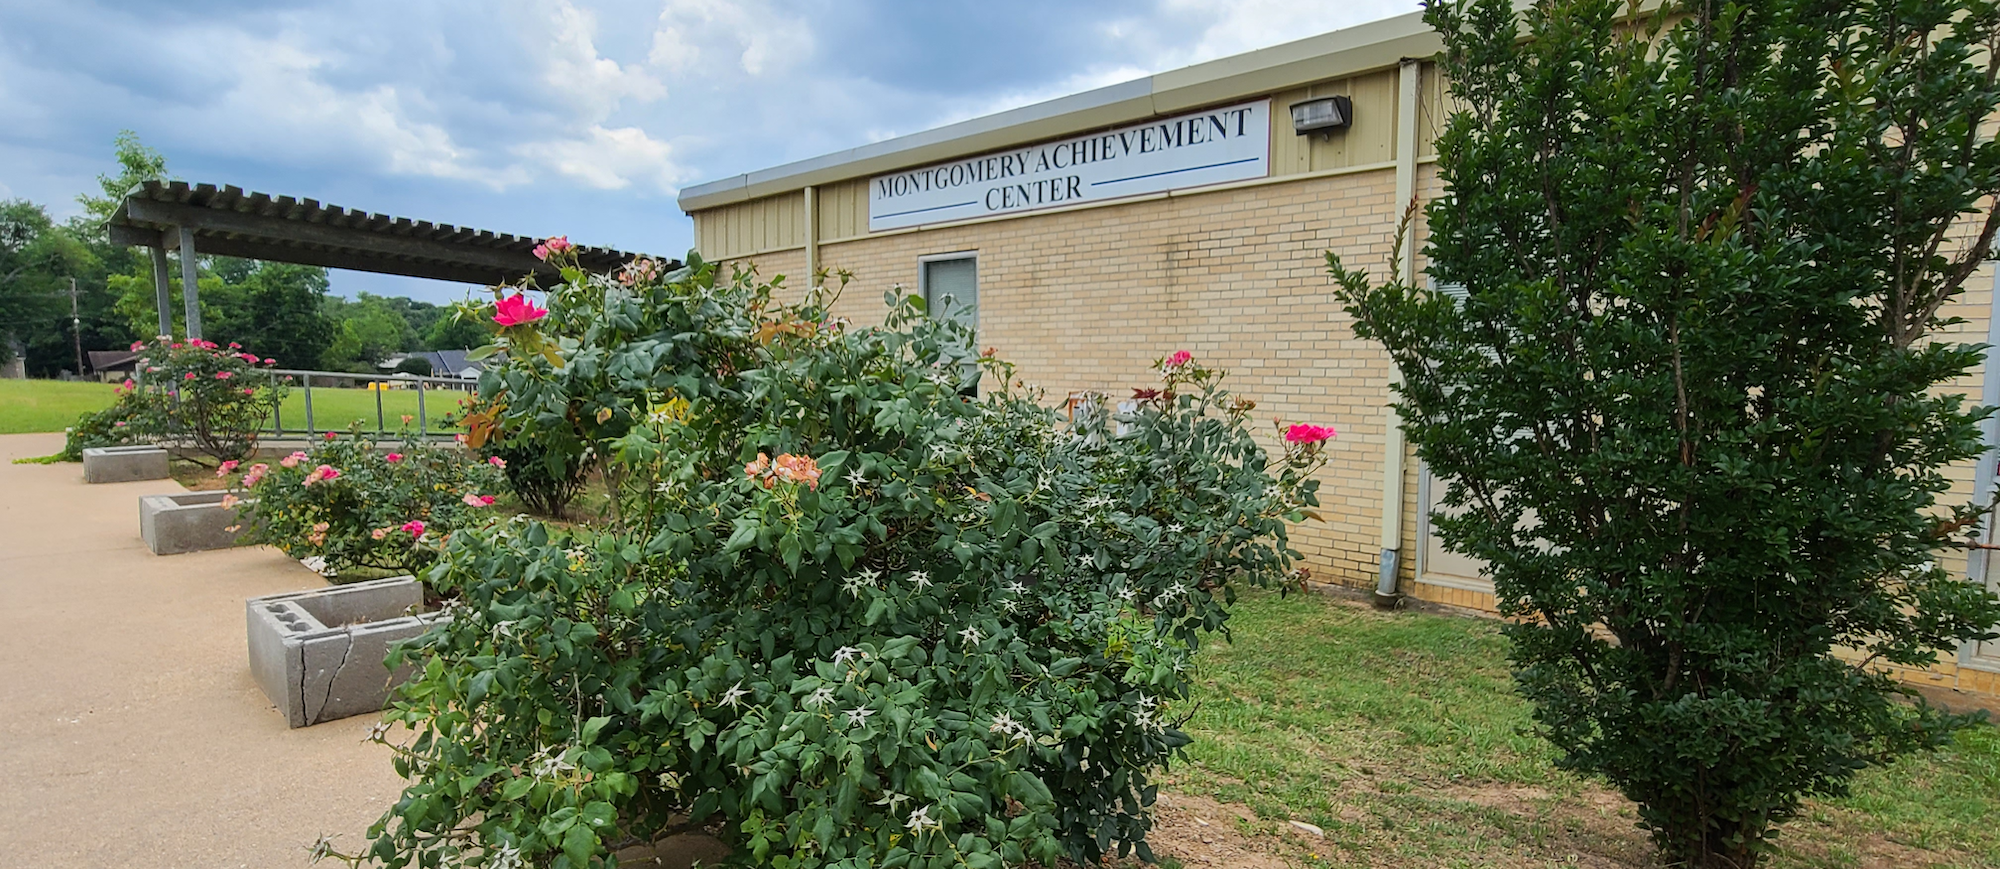 Montgomery Achievement Center